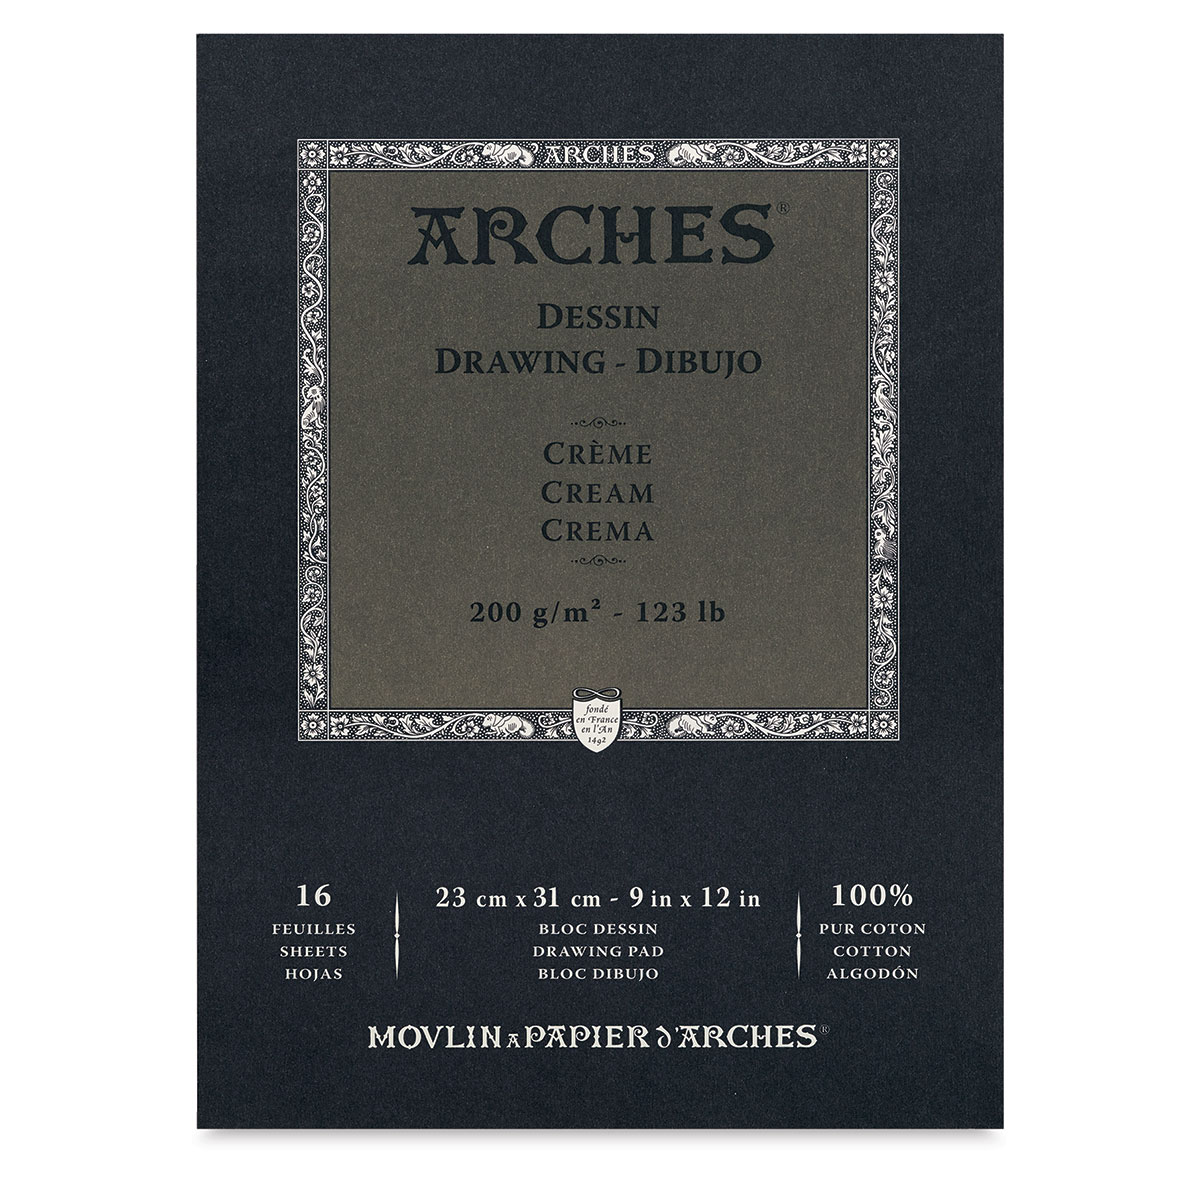 Arches Drawing Paper Pads Utrecht Art Supplies